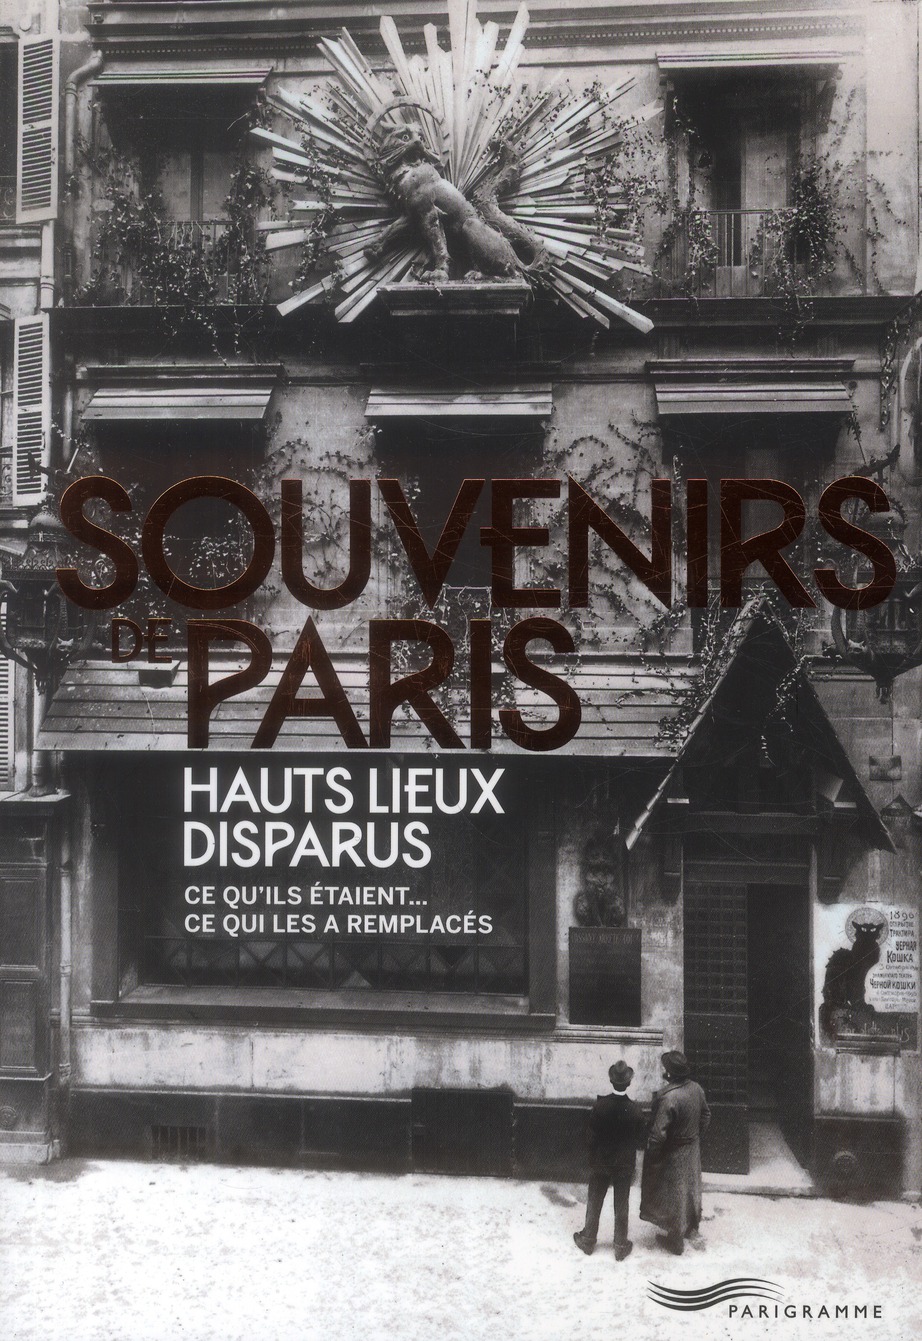 SOUVENIRS DE PARIS, HAUTS LIEUX DISPARUS